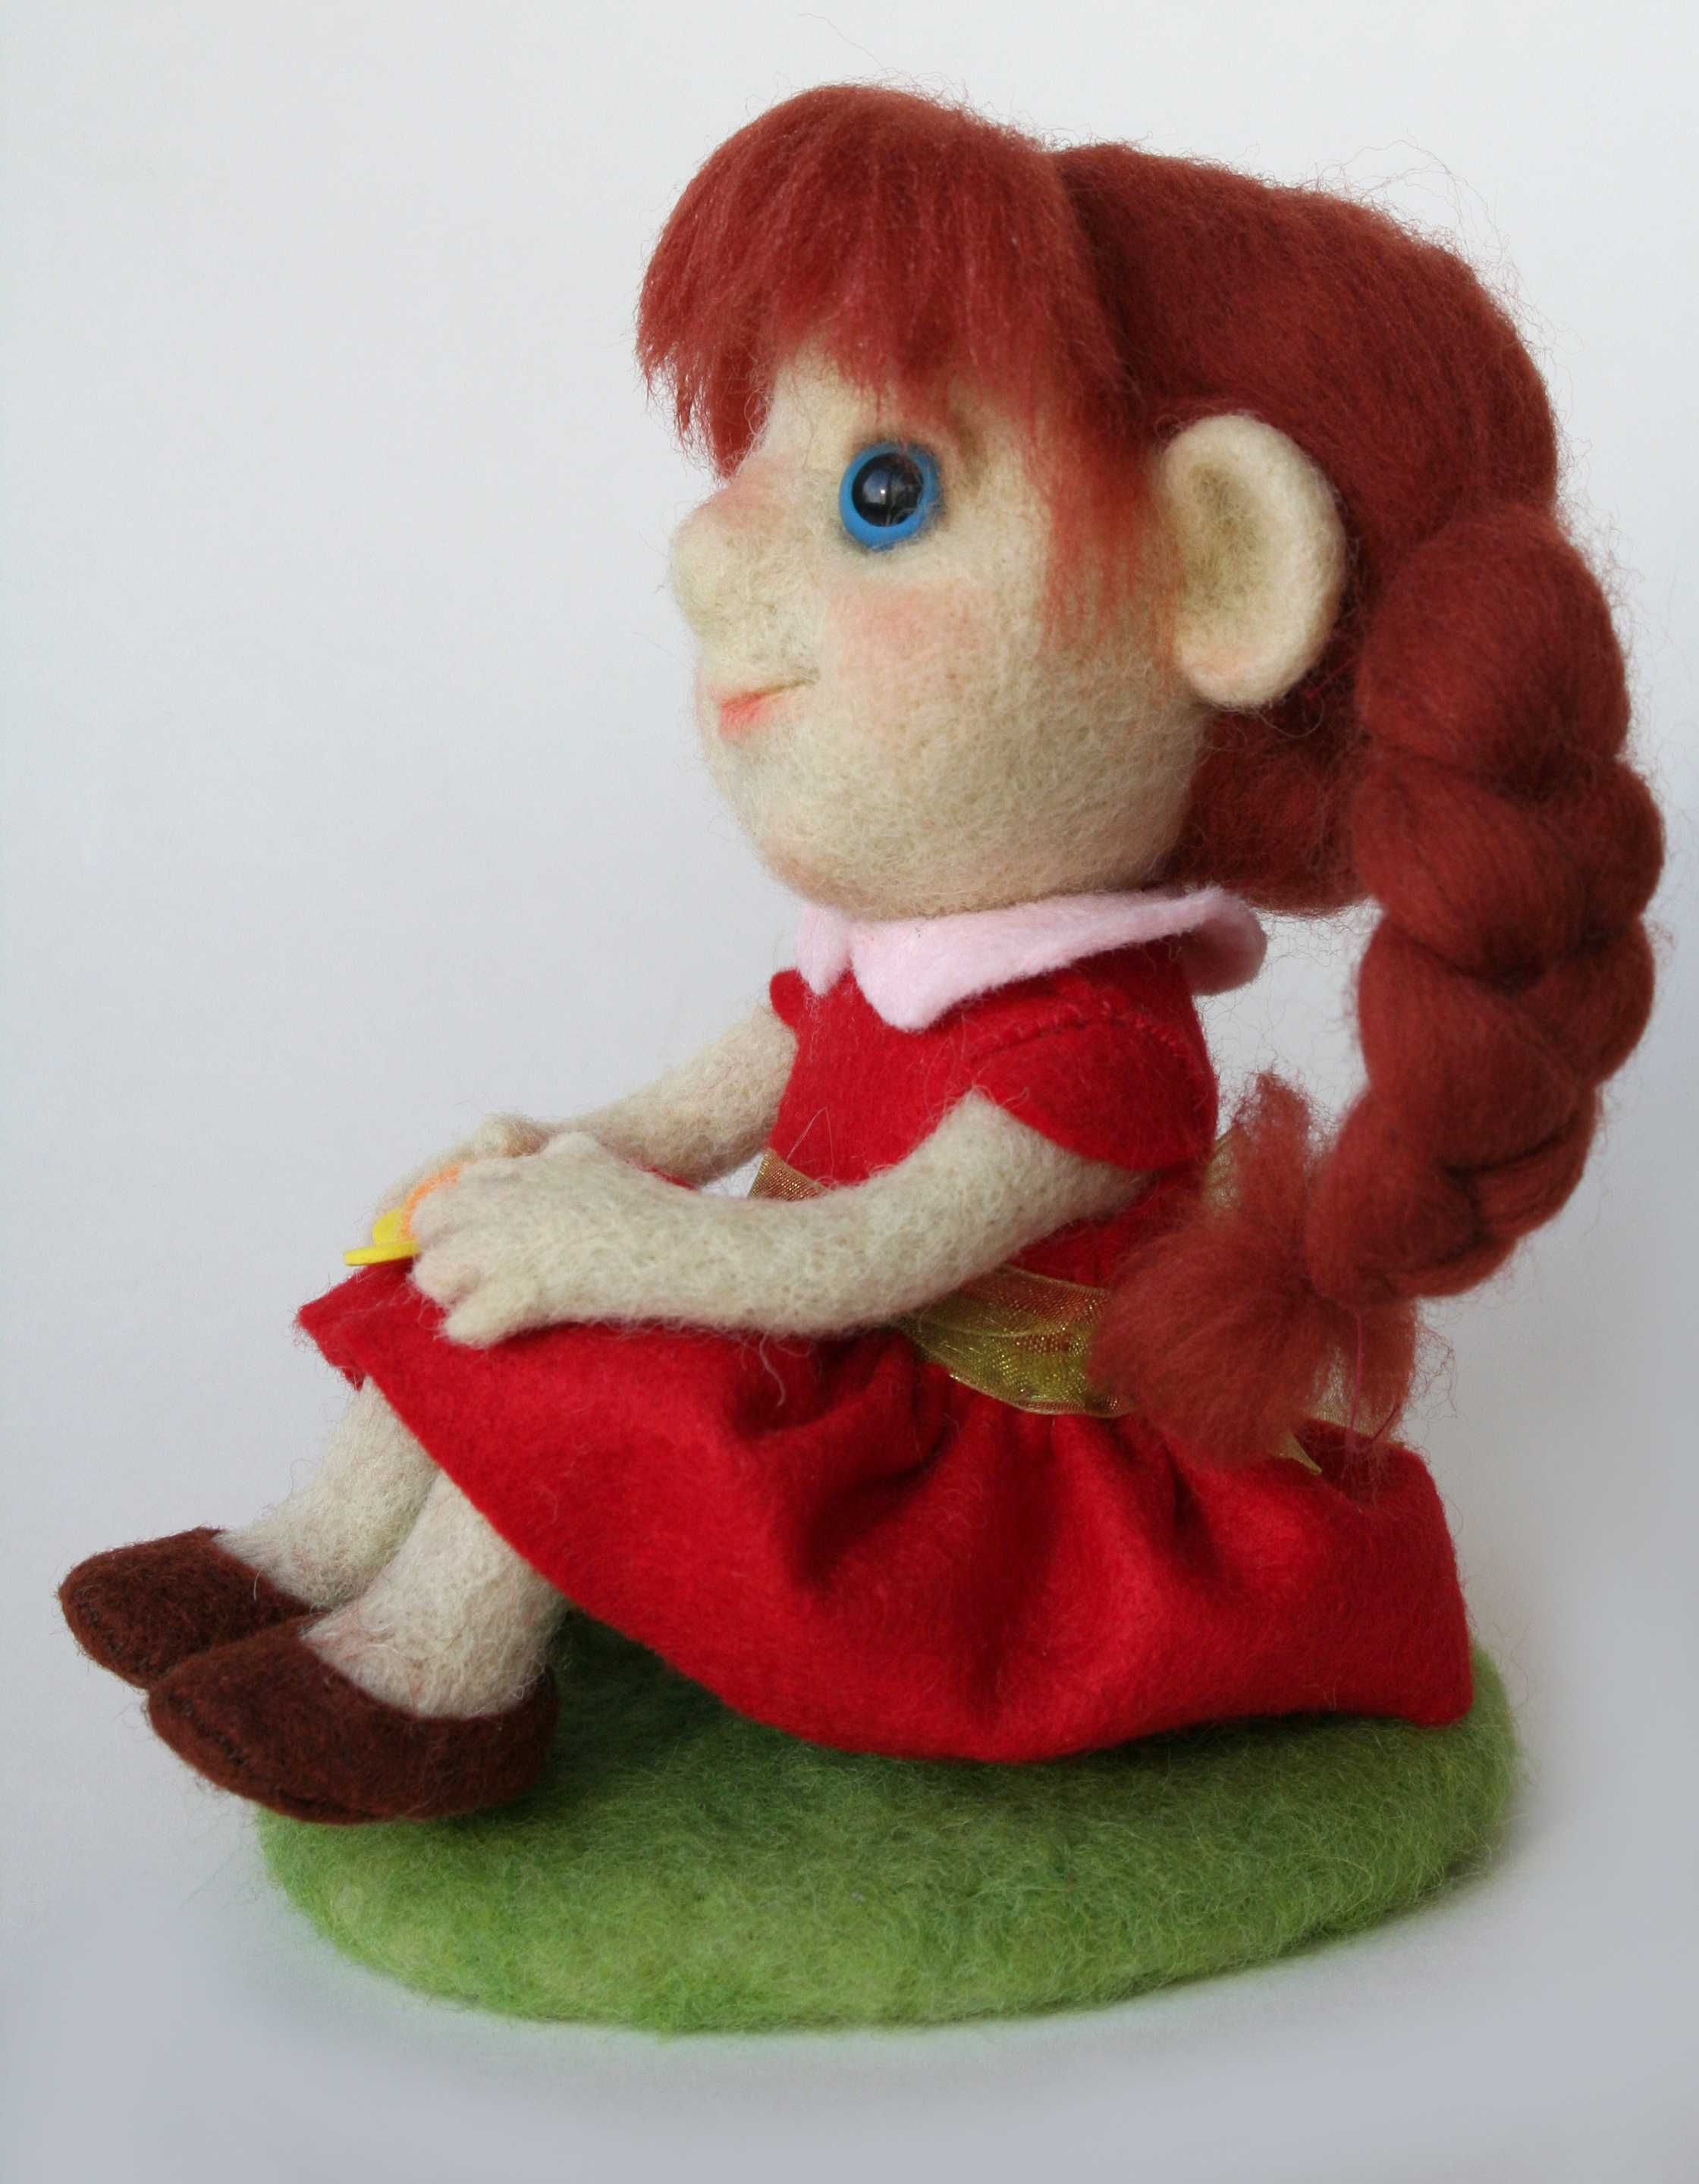 Валяная игрушка "Девочка с рыжими косами".